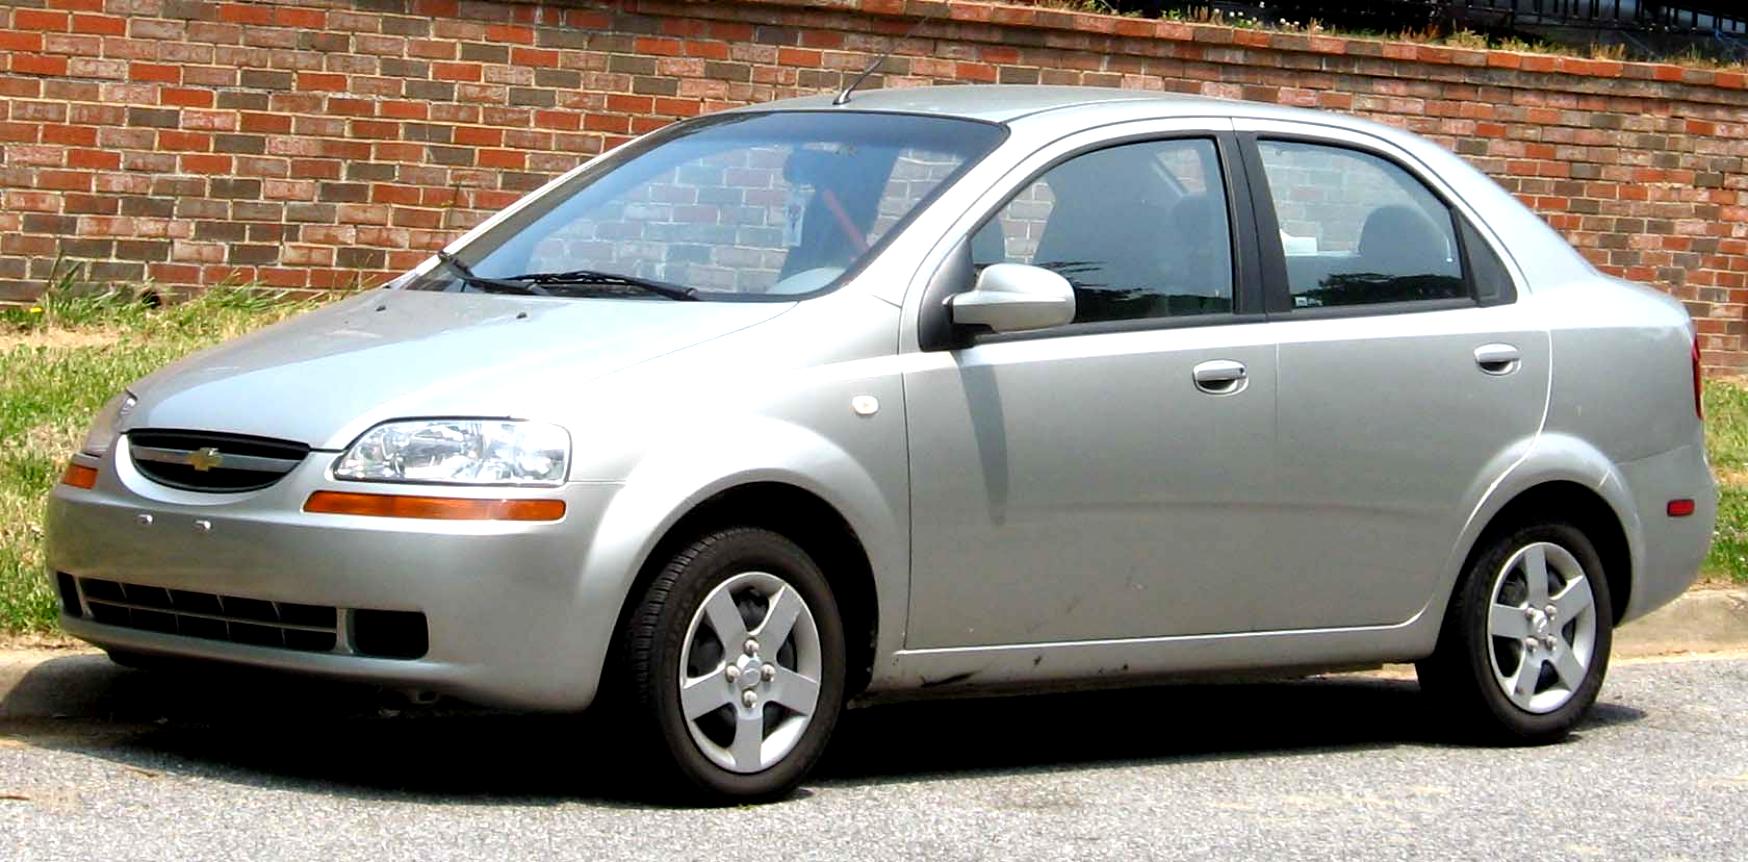 Chevrolet Aveo/Kalos Sedan 2005 on